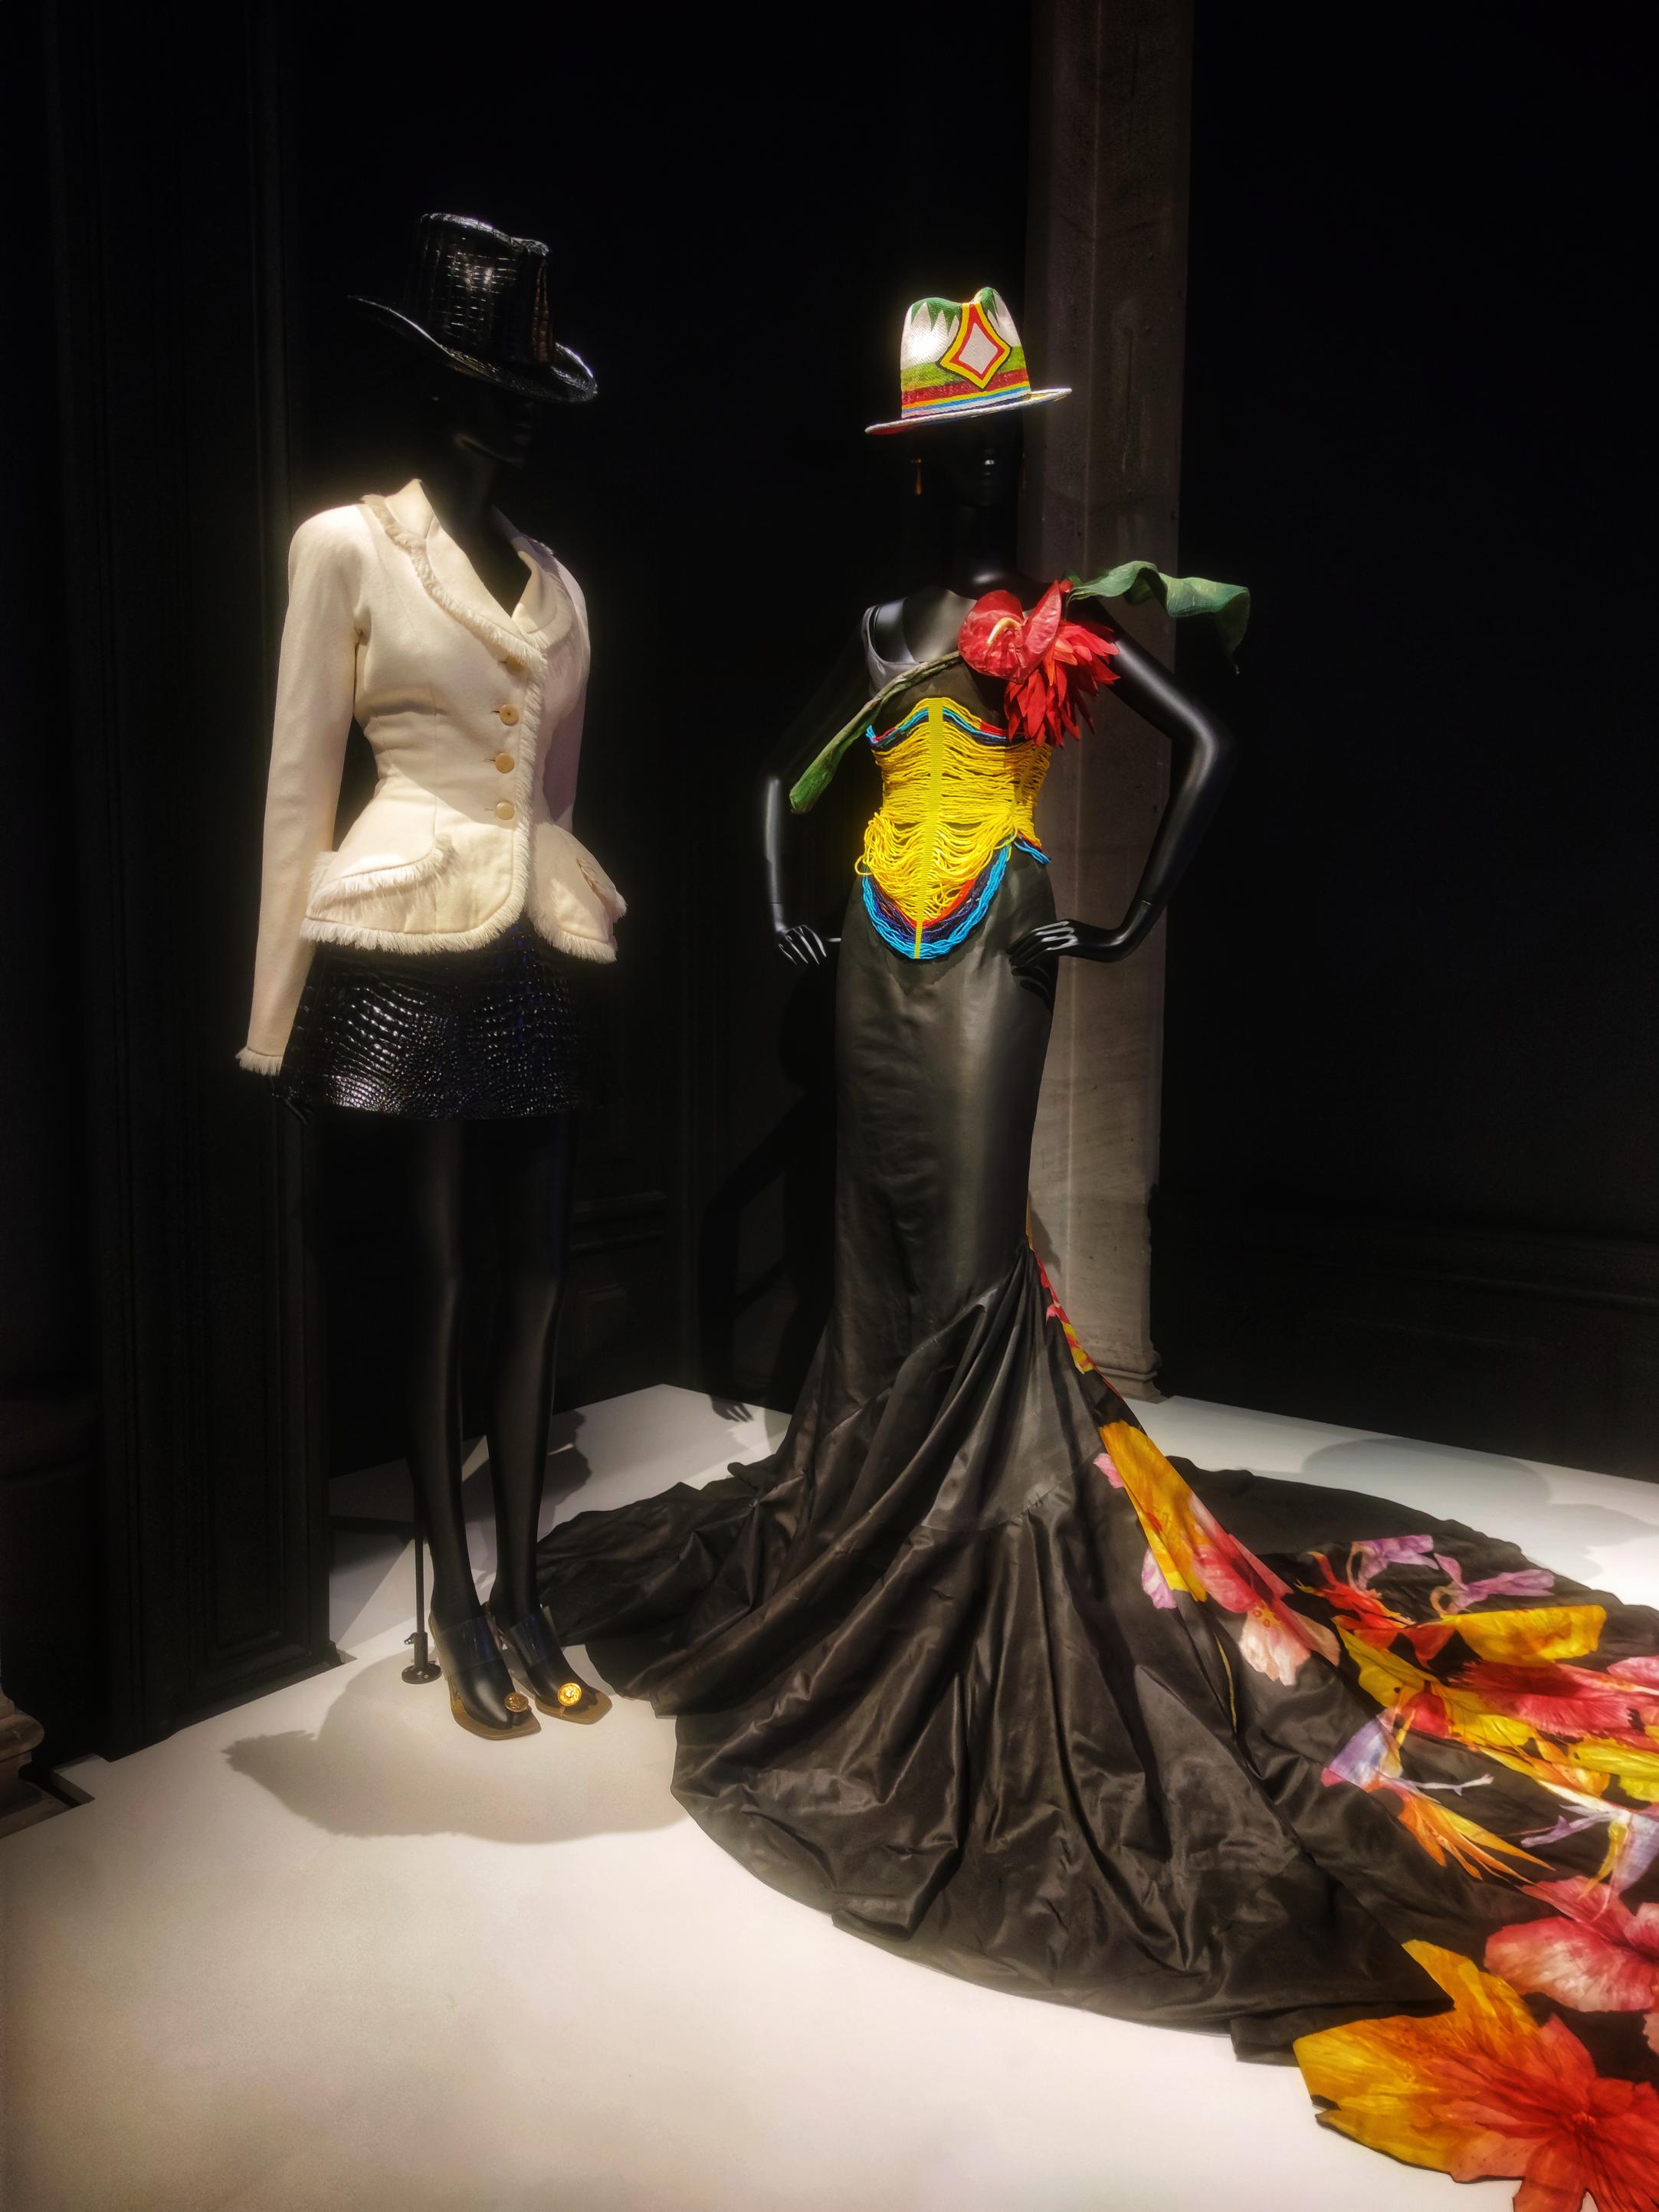 First collection John Galliano at Dior, Palais Galliera. (c) Sarah Barreiros.